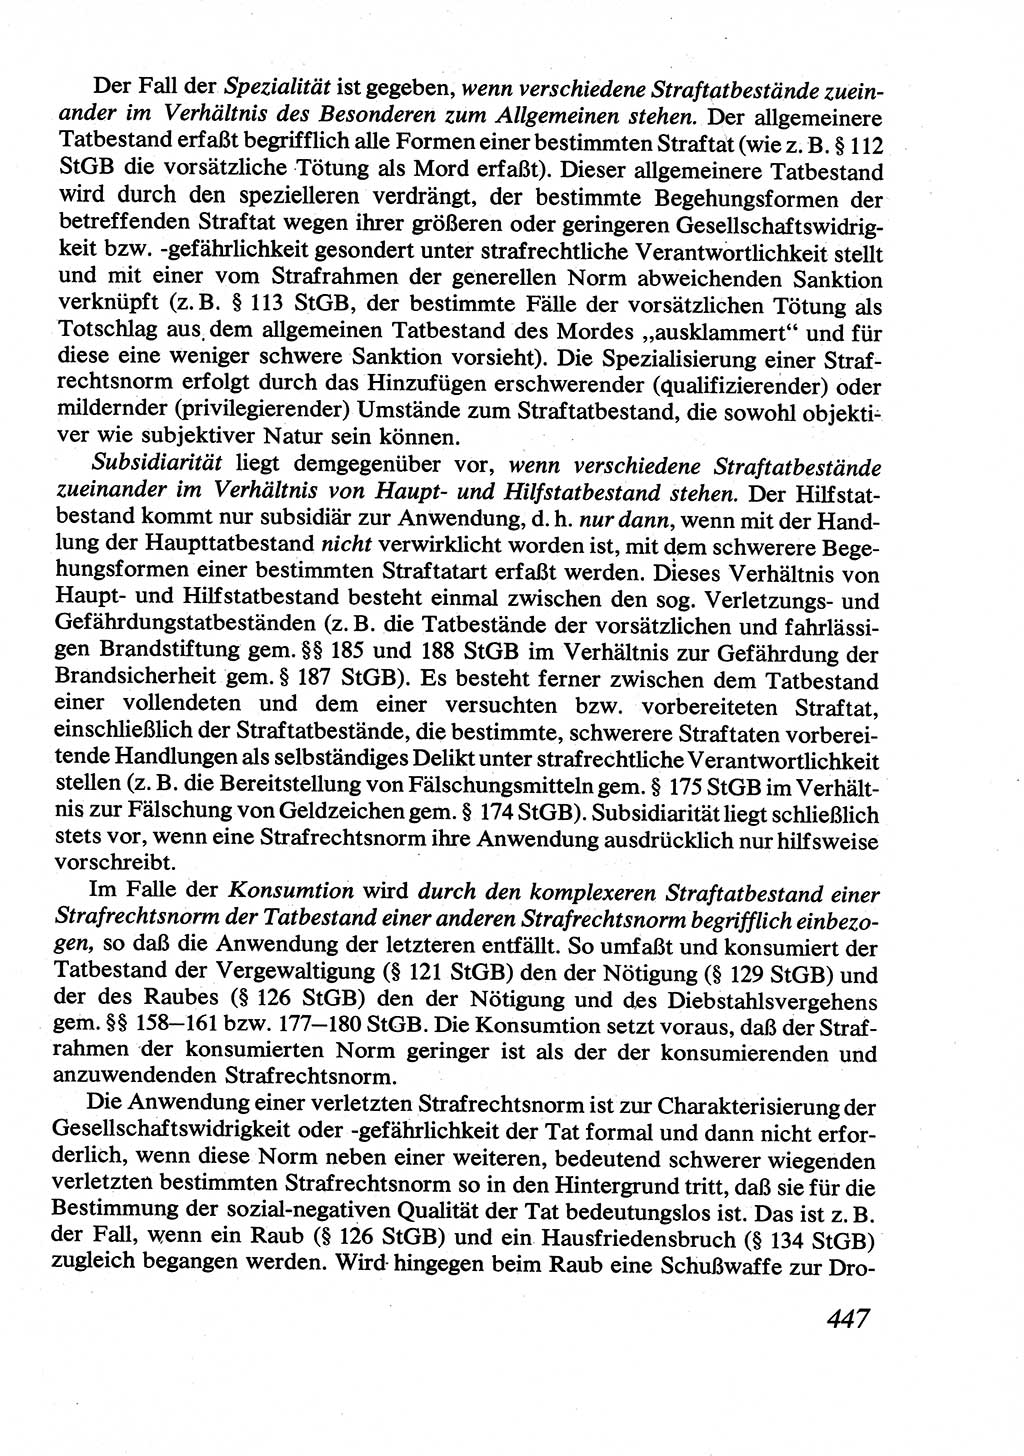 Strafrecht [Deutsche Demokratische Republik (DDR)], Allgemeiner Teil, Lehrbuch 1976, Seite 447 (Strafr. DDR AT Lb. 1976, S. 447)